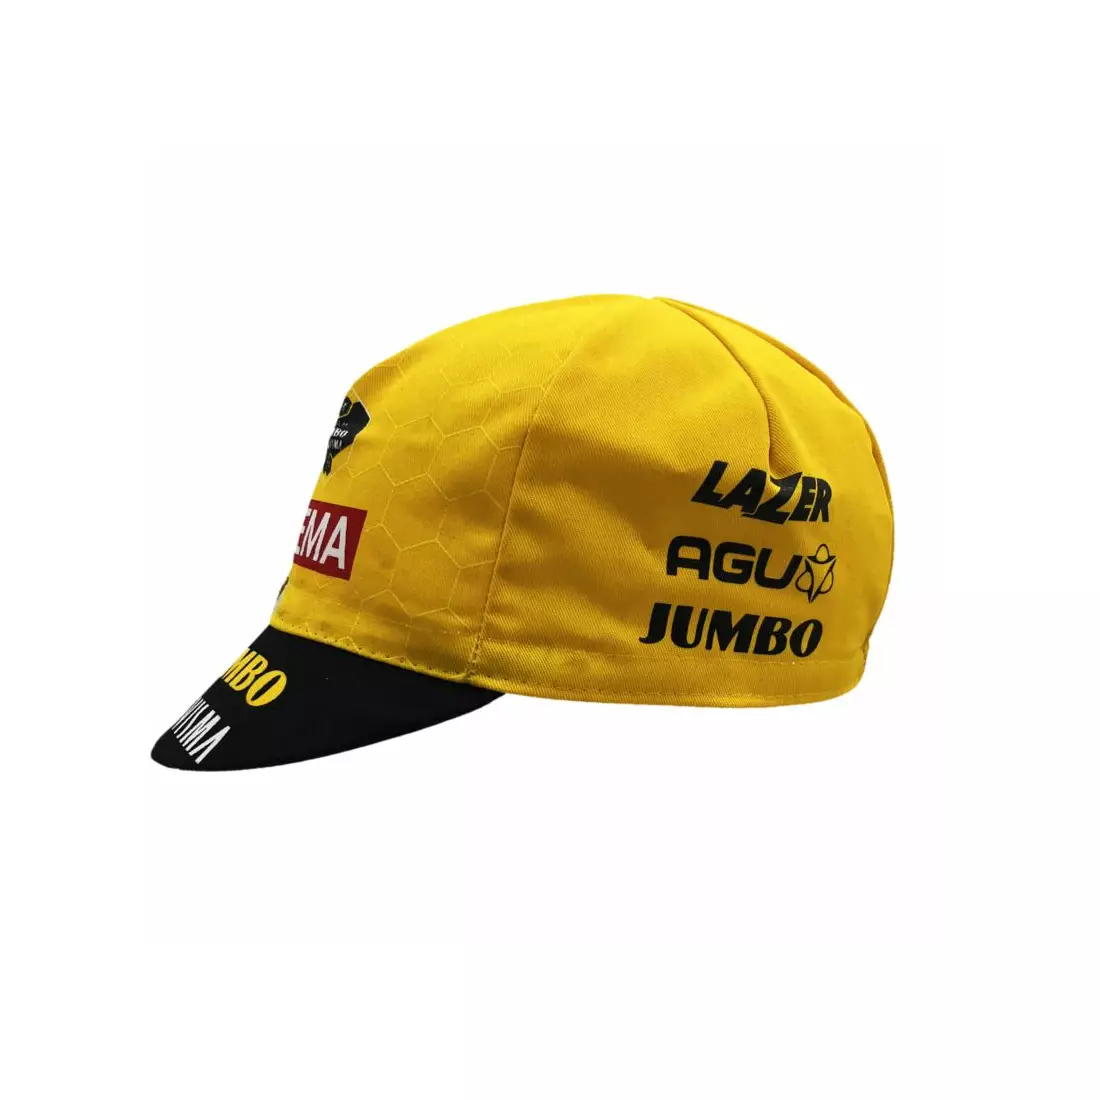 APIS PROFI JUMBO-VISMA cycling cap with visor